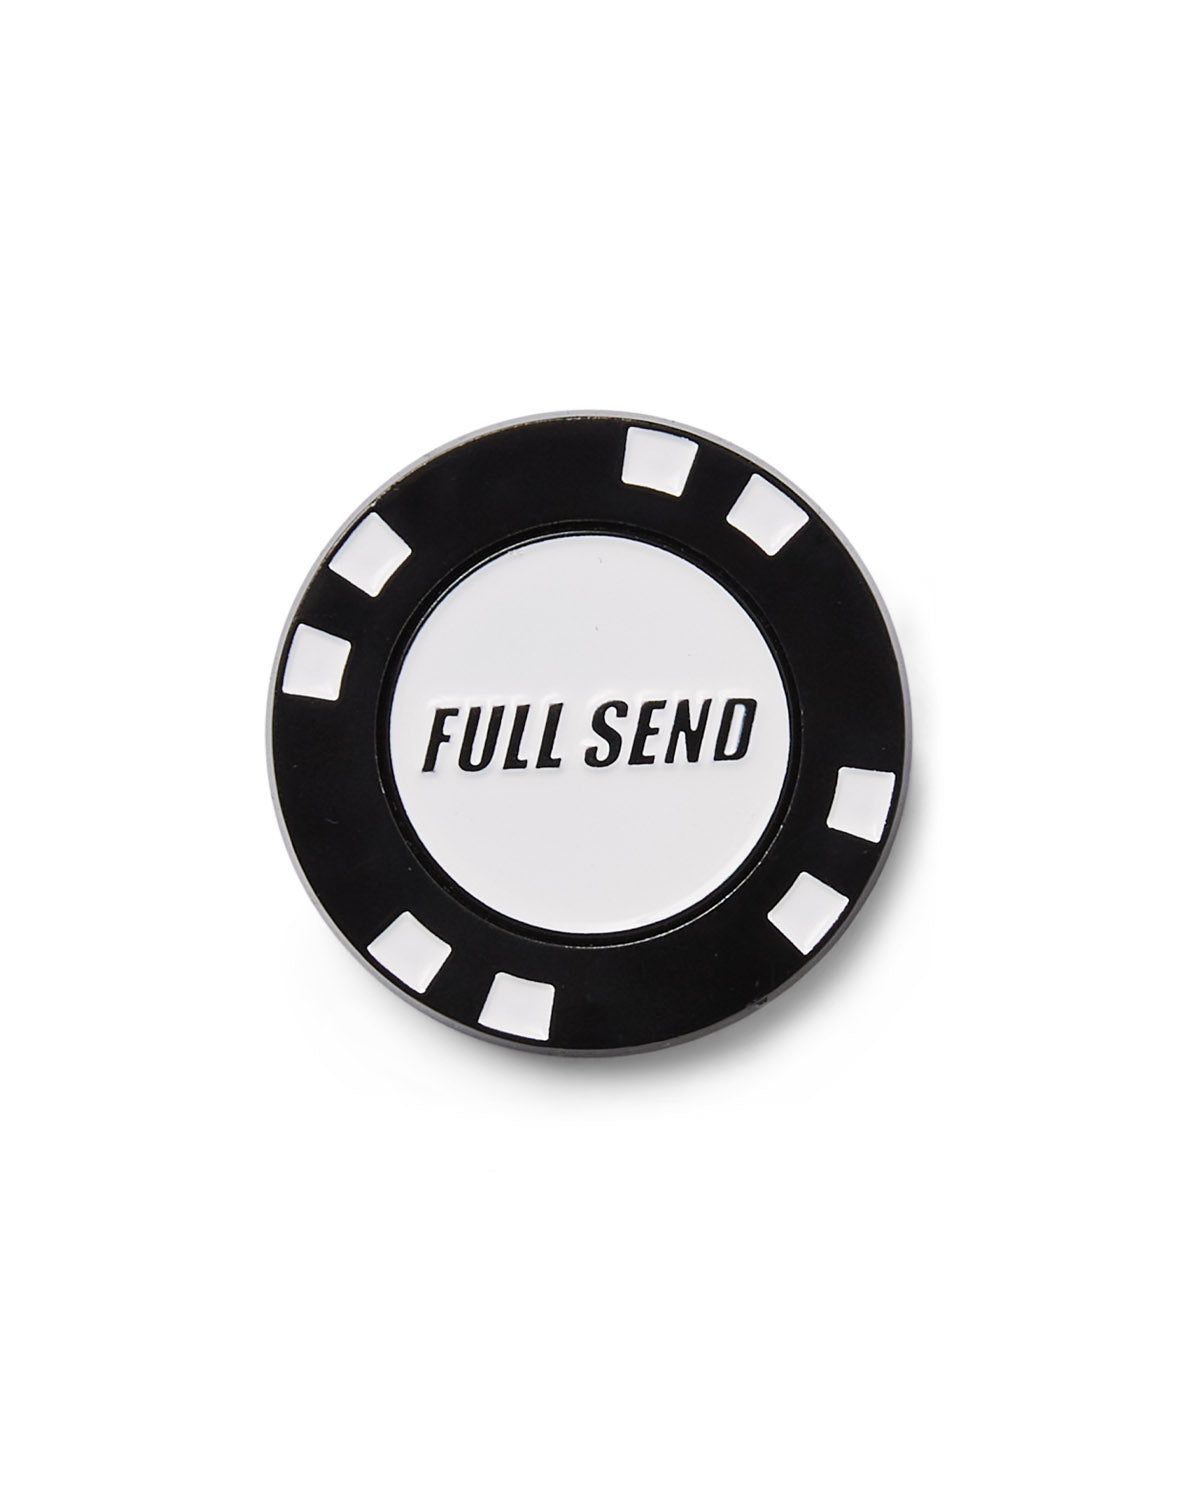 nelk full send poker set